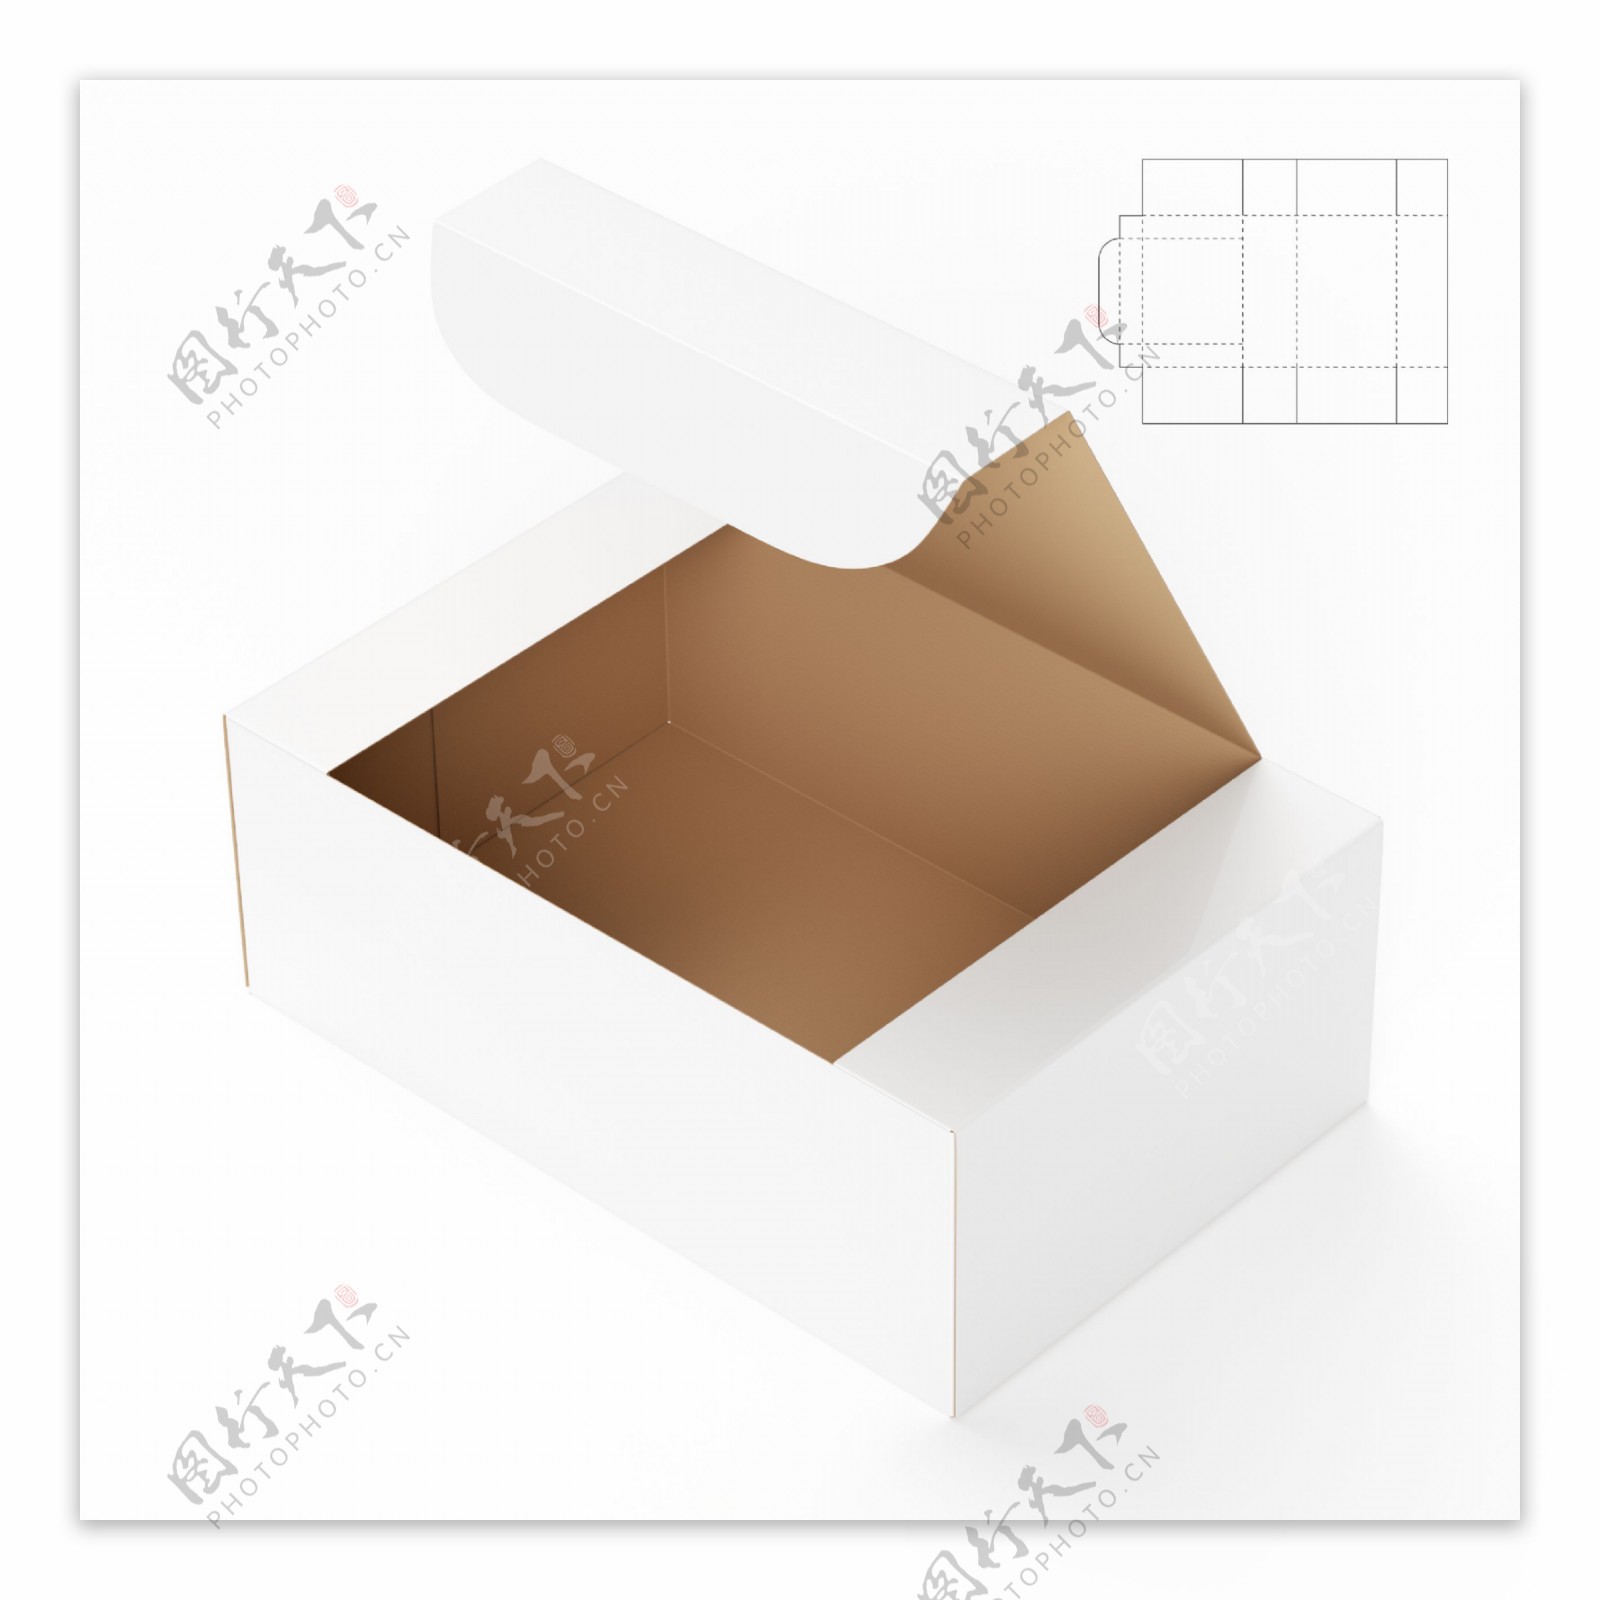 空白盒子与平面展开图